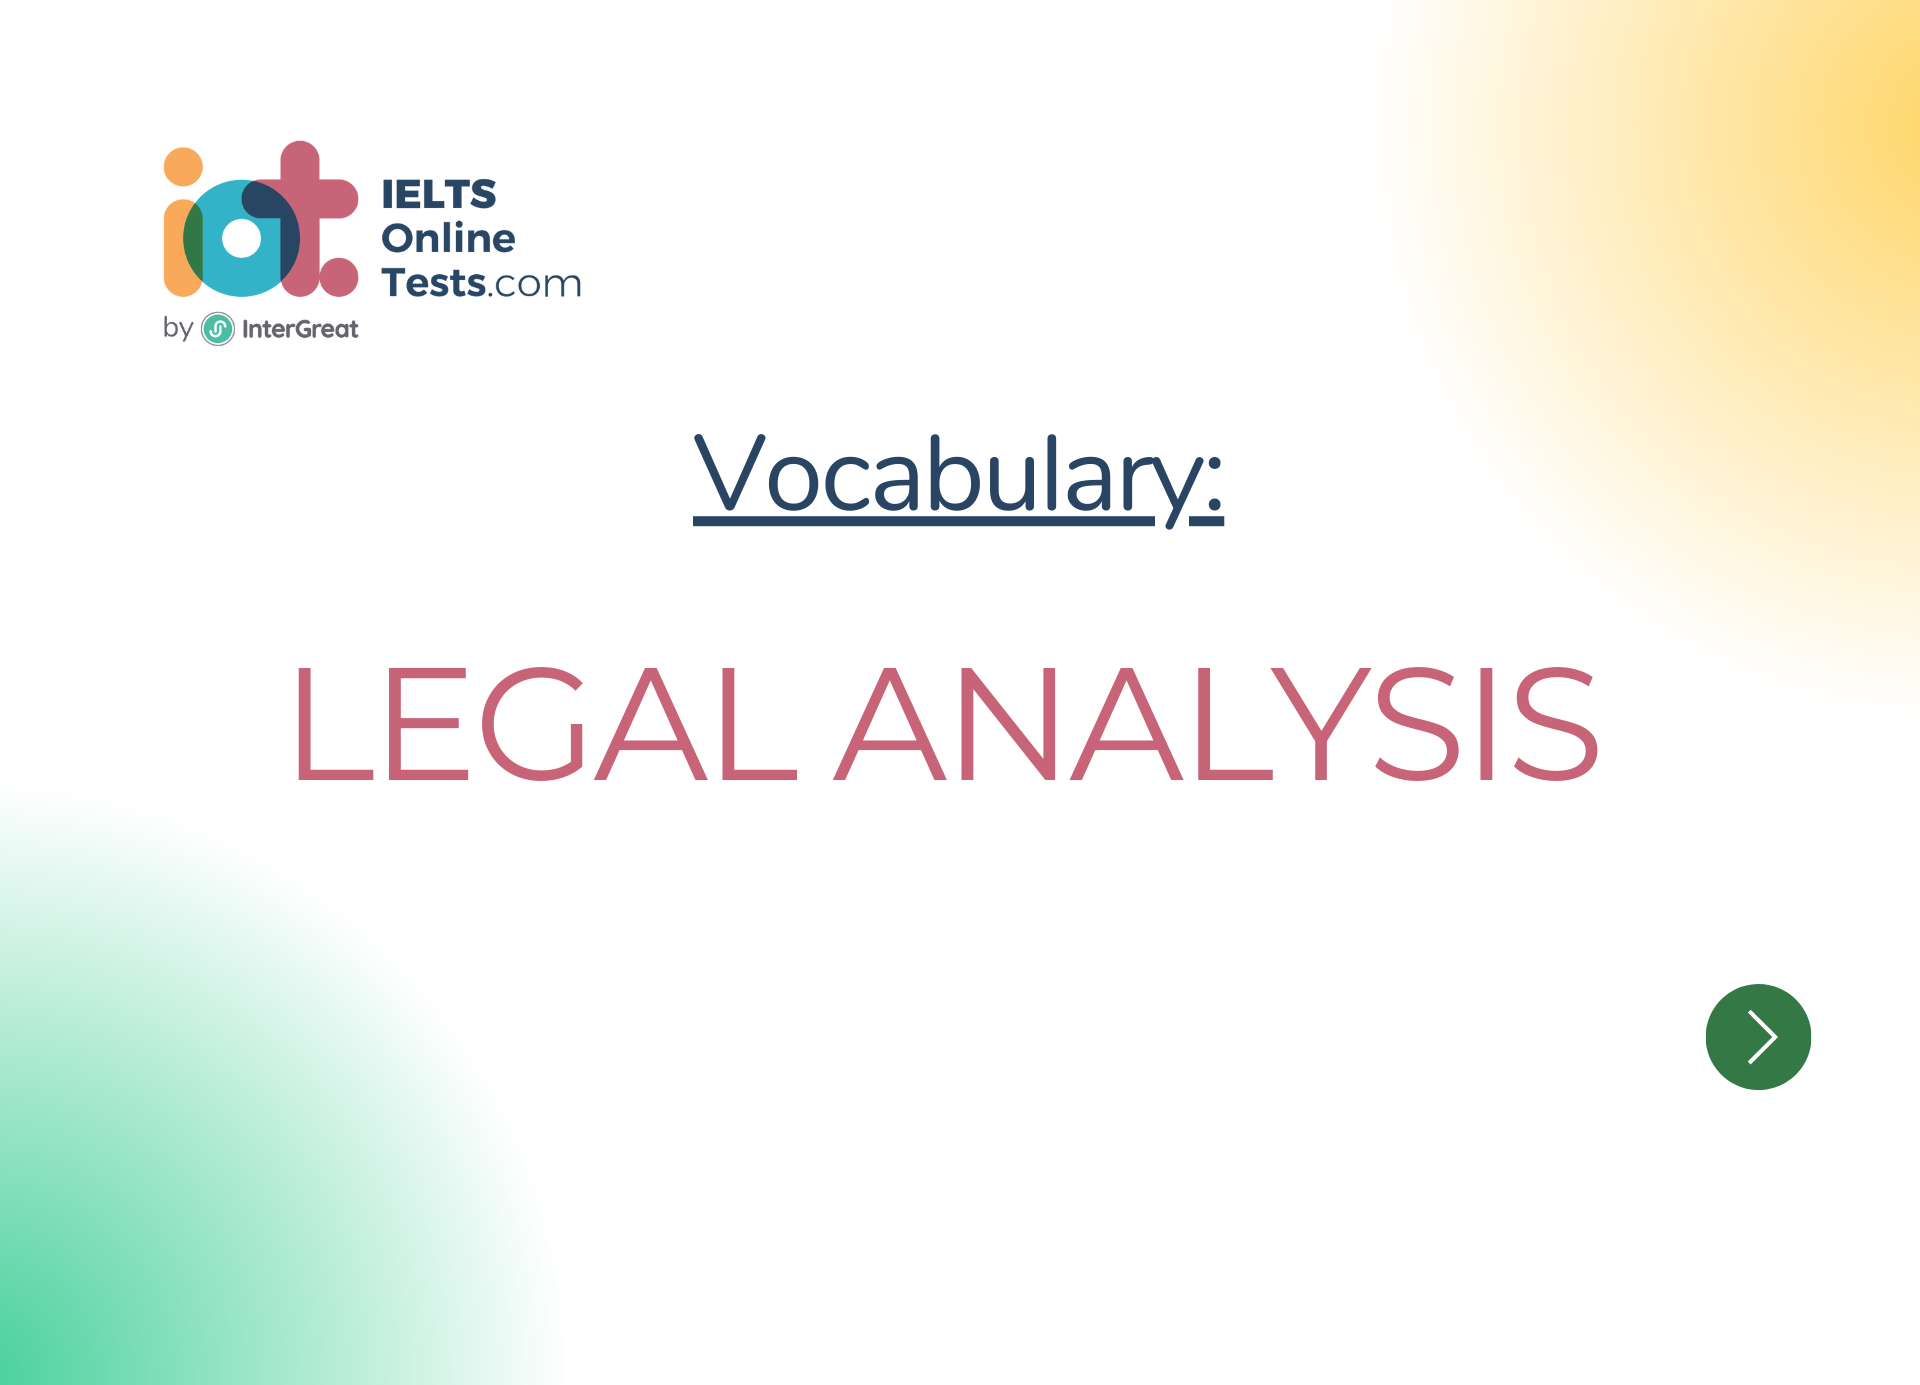 Legal analysis